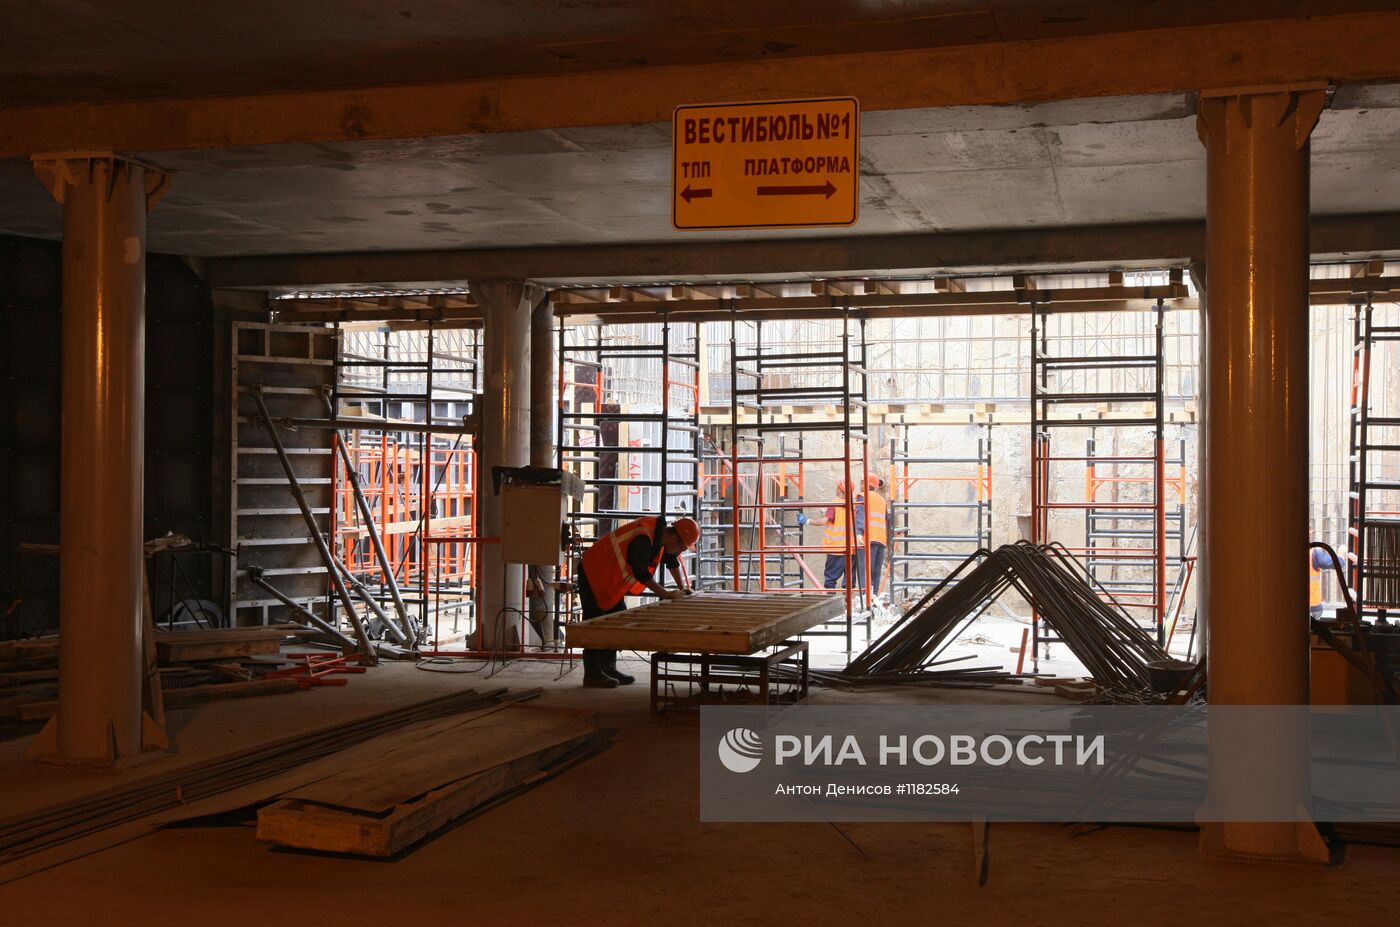 Строительство станции метро "Пятницкое шоссе" в Москве